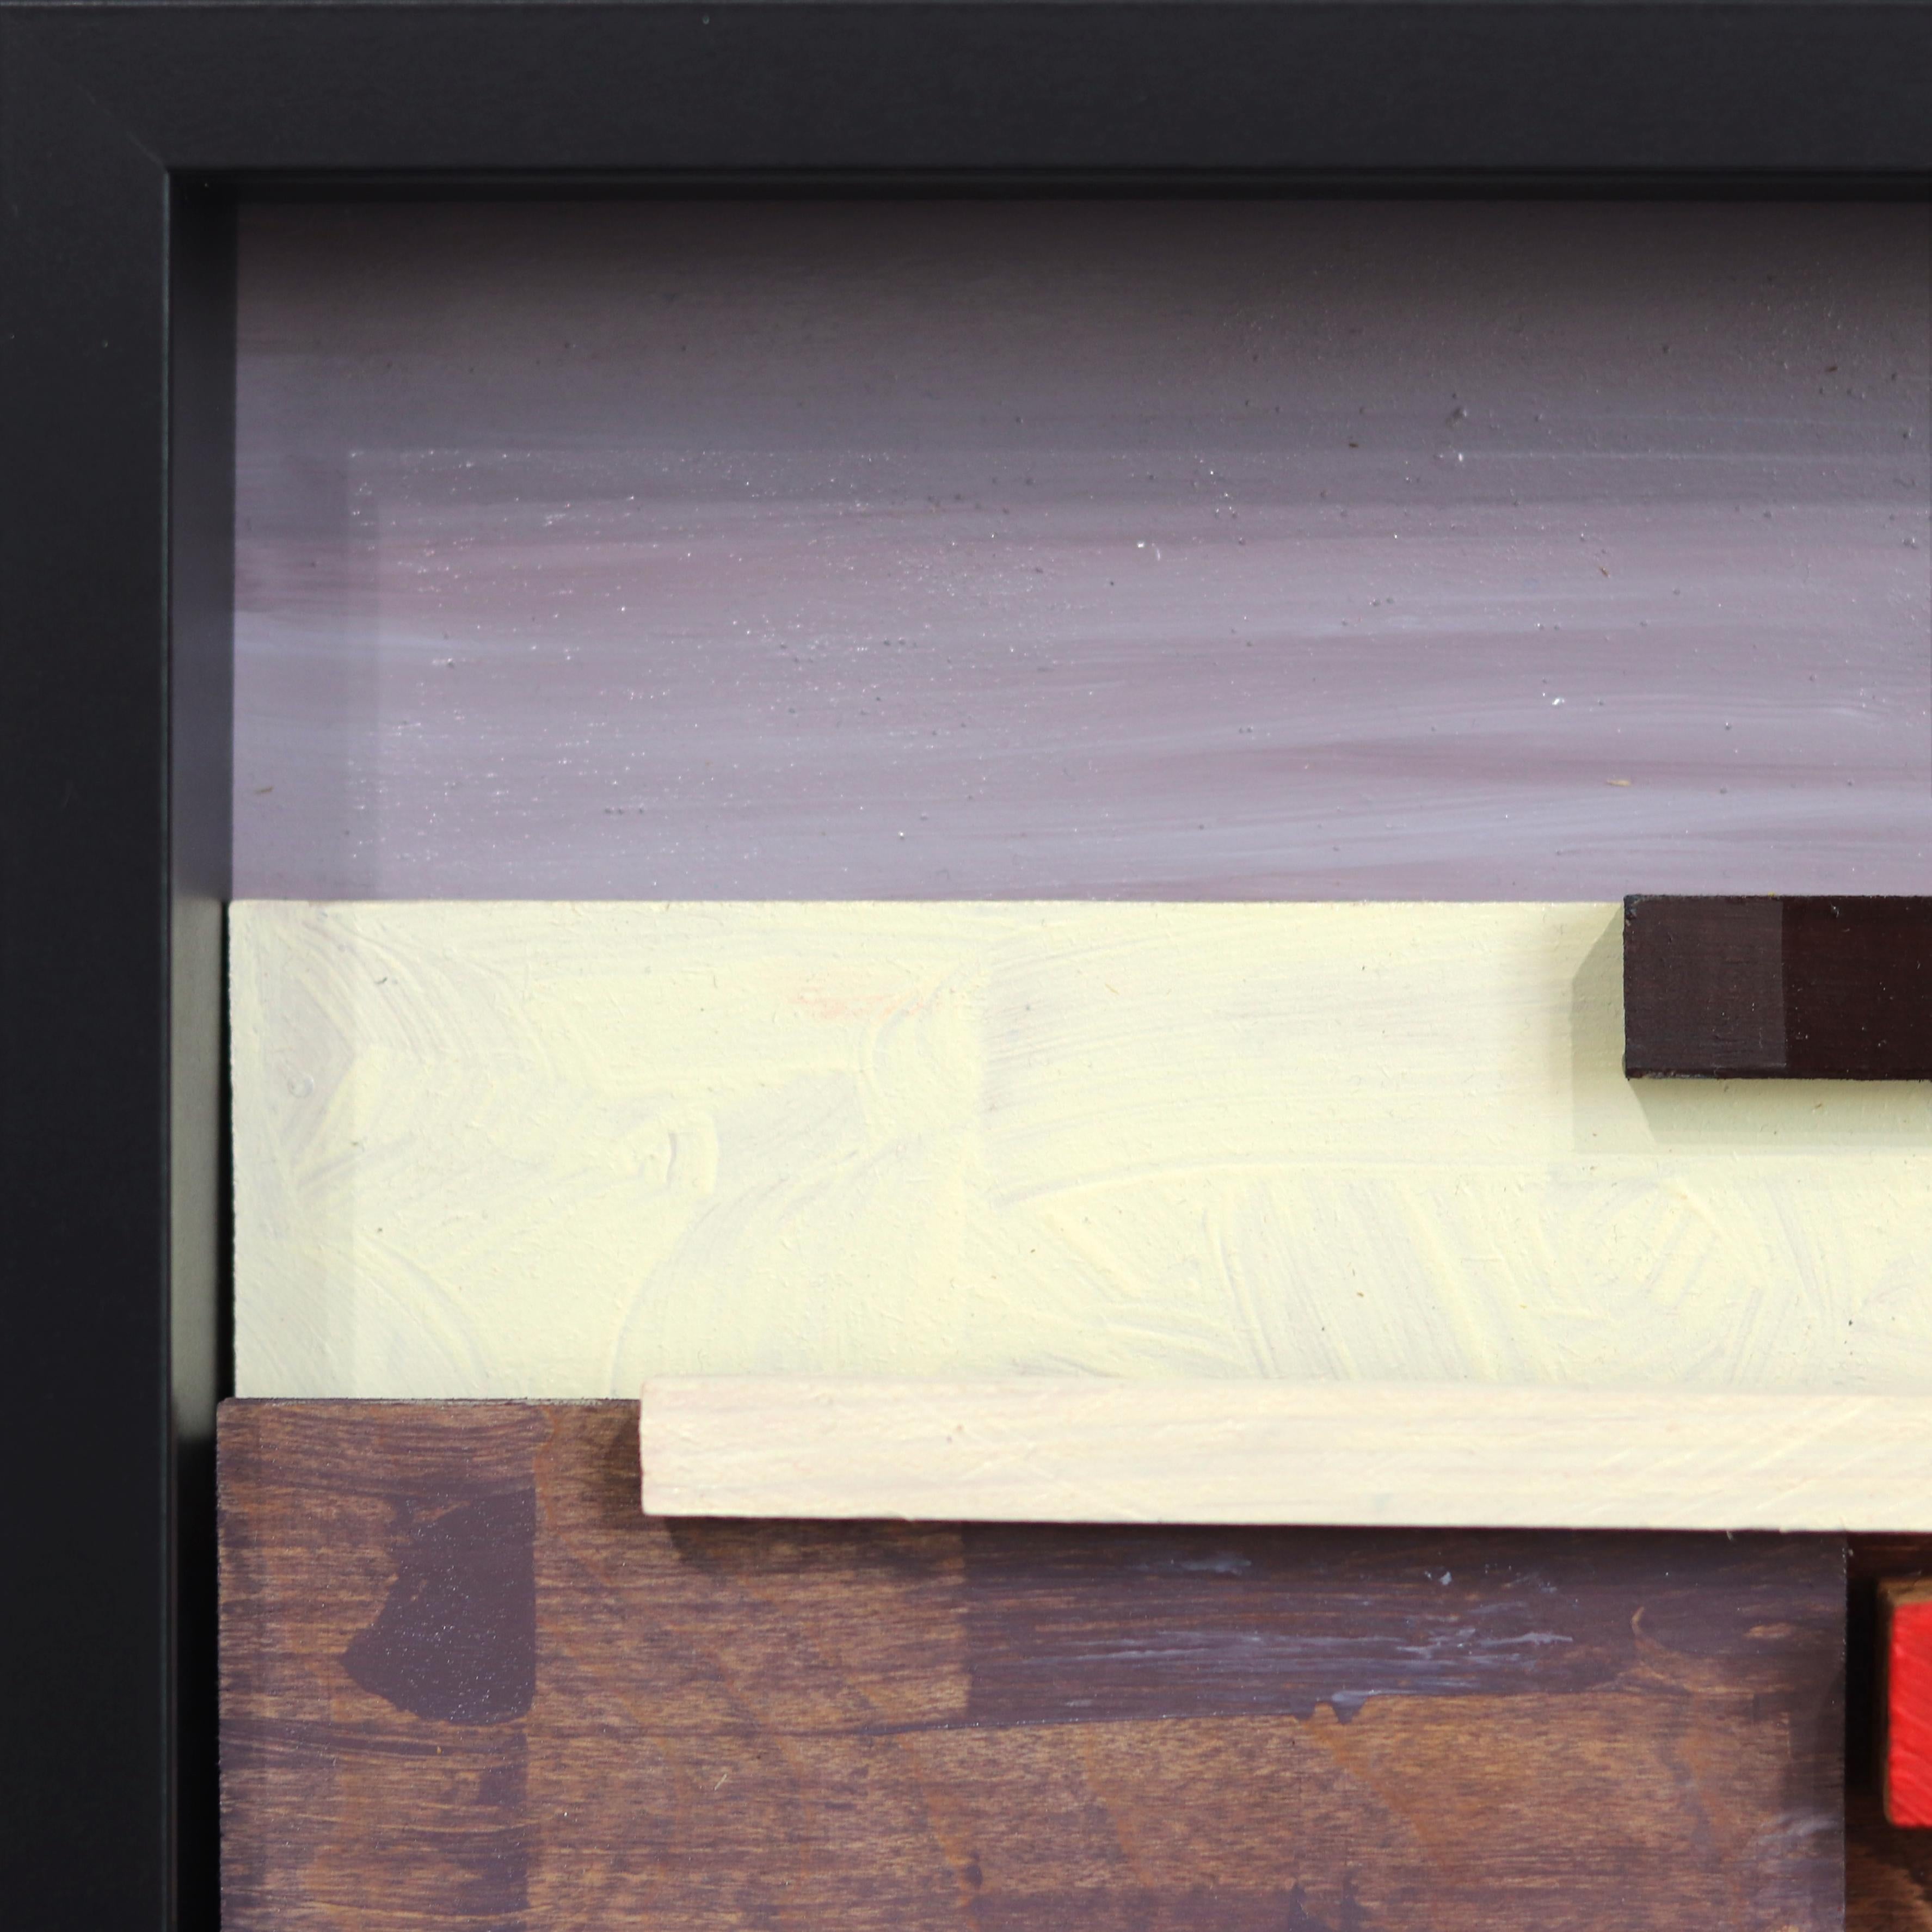 Bernsteinfarbenes Licht auf dem Ozeanpark – gerahmtes, strukturiertes, abstraktes Landschaftsgemälde (Abstrakter Expressionismus), Painting, von Paul Kirley